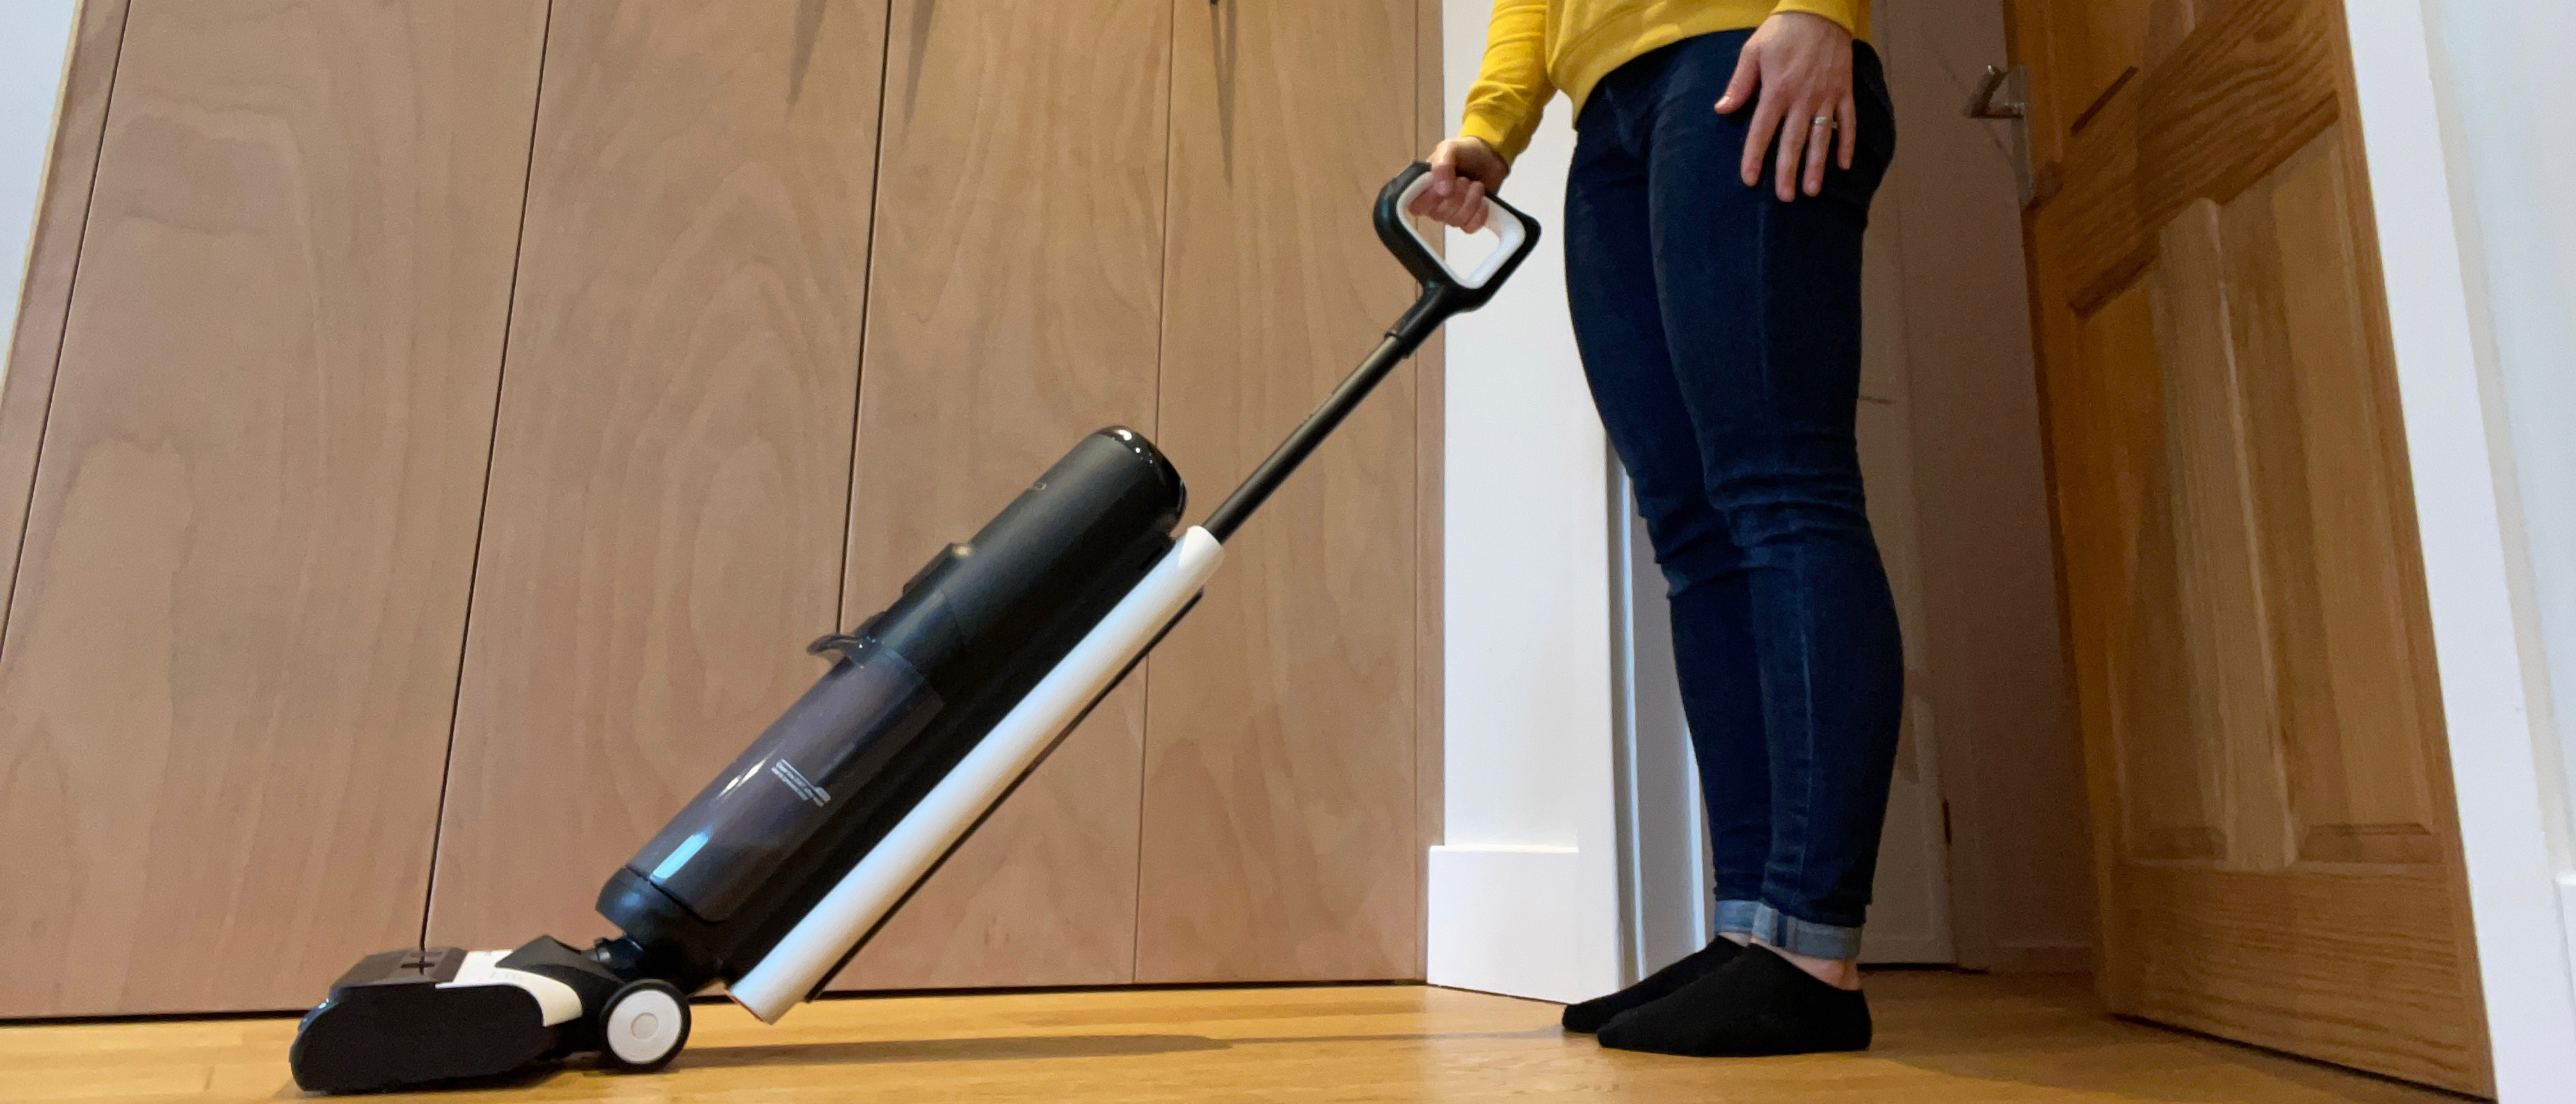 TINECO FLOOR ONE S3 Vacuum Mop, Is it WORTH IT?